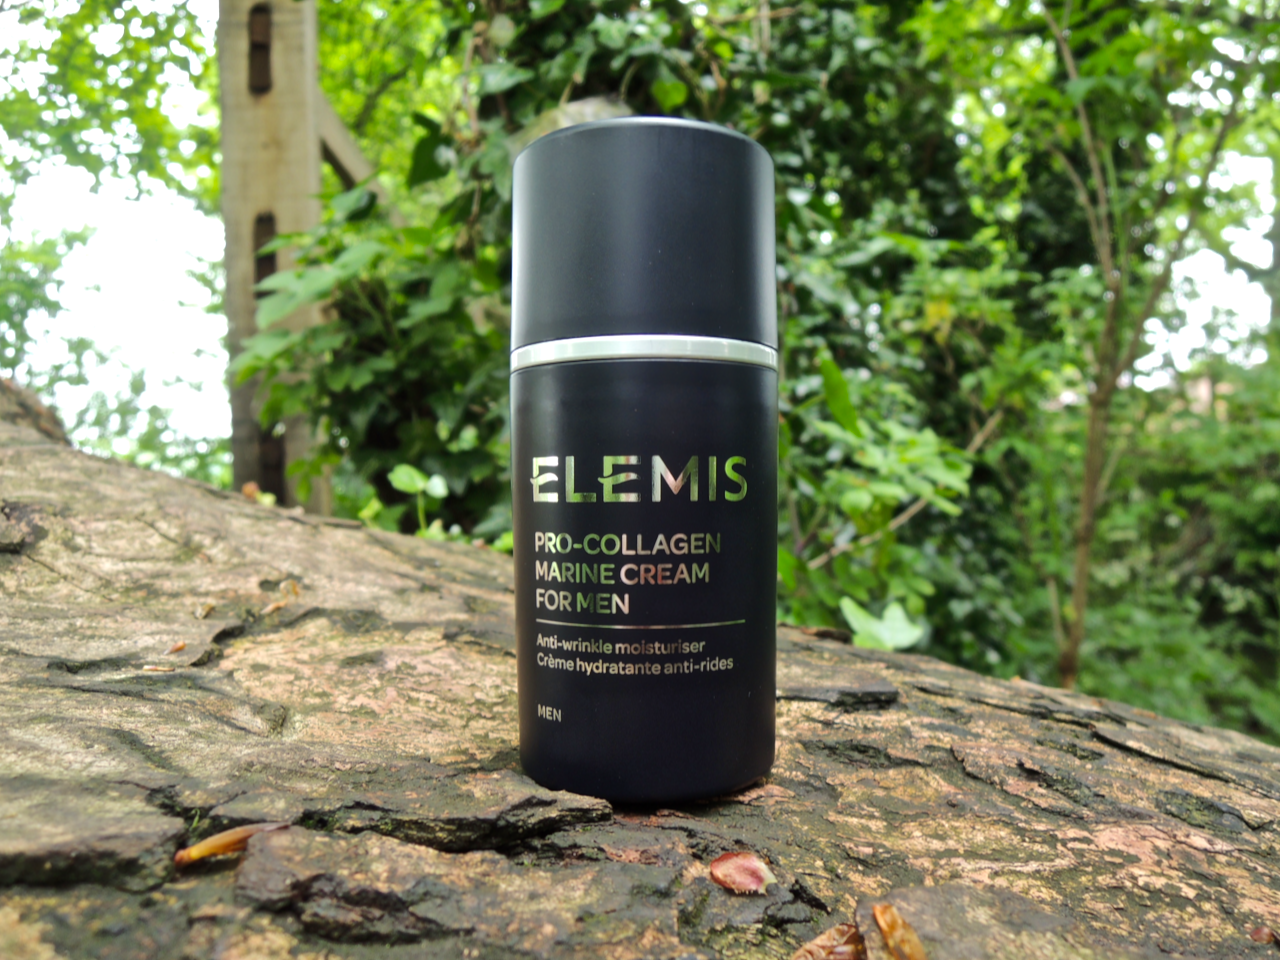 Elemis Pro-Collagen Marine Cream for Men.